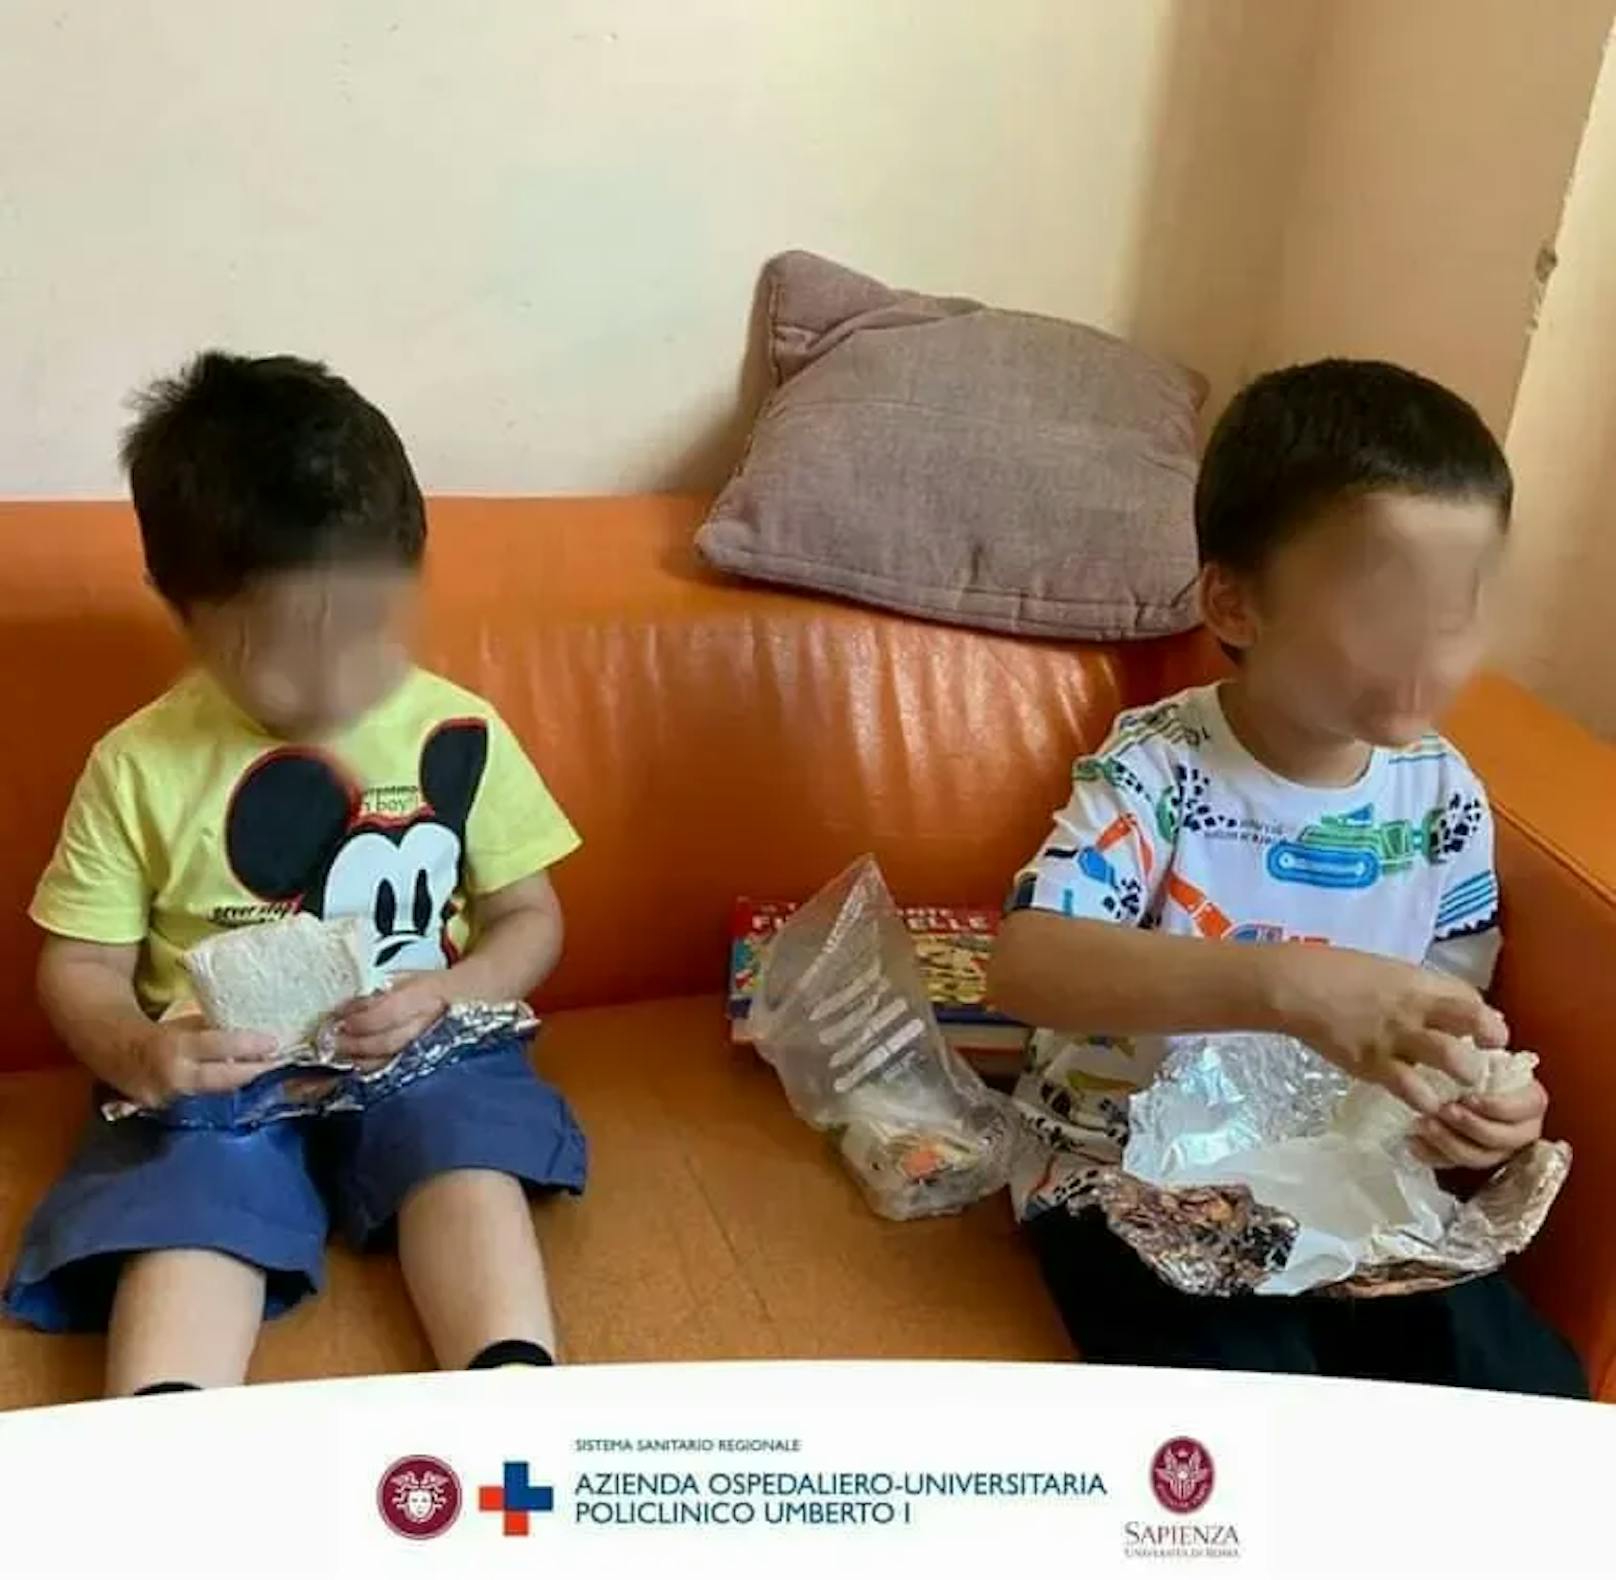 Pietro (4) und Paolo (6) wurden am 10. Mai 2023 von der Polizei in Rom gerettet. Jetzt schildert das Spital die beeindruckende Erholung der Kinder.